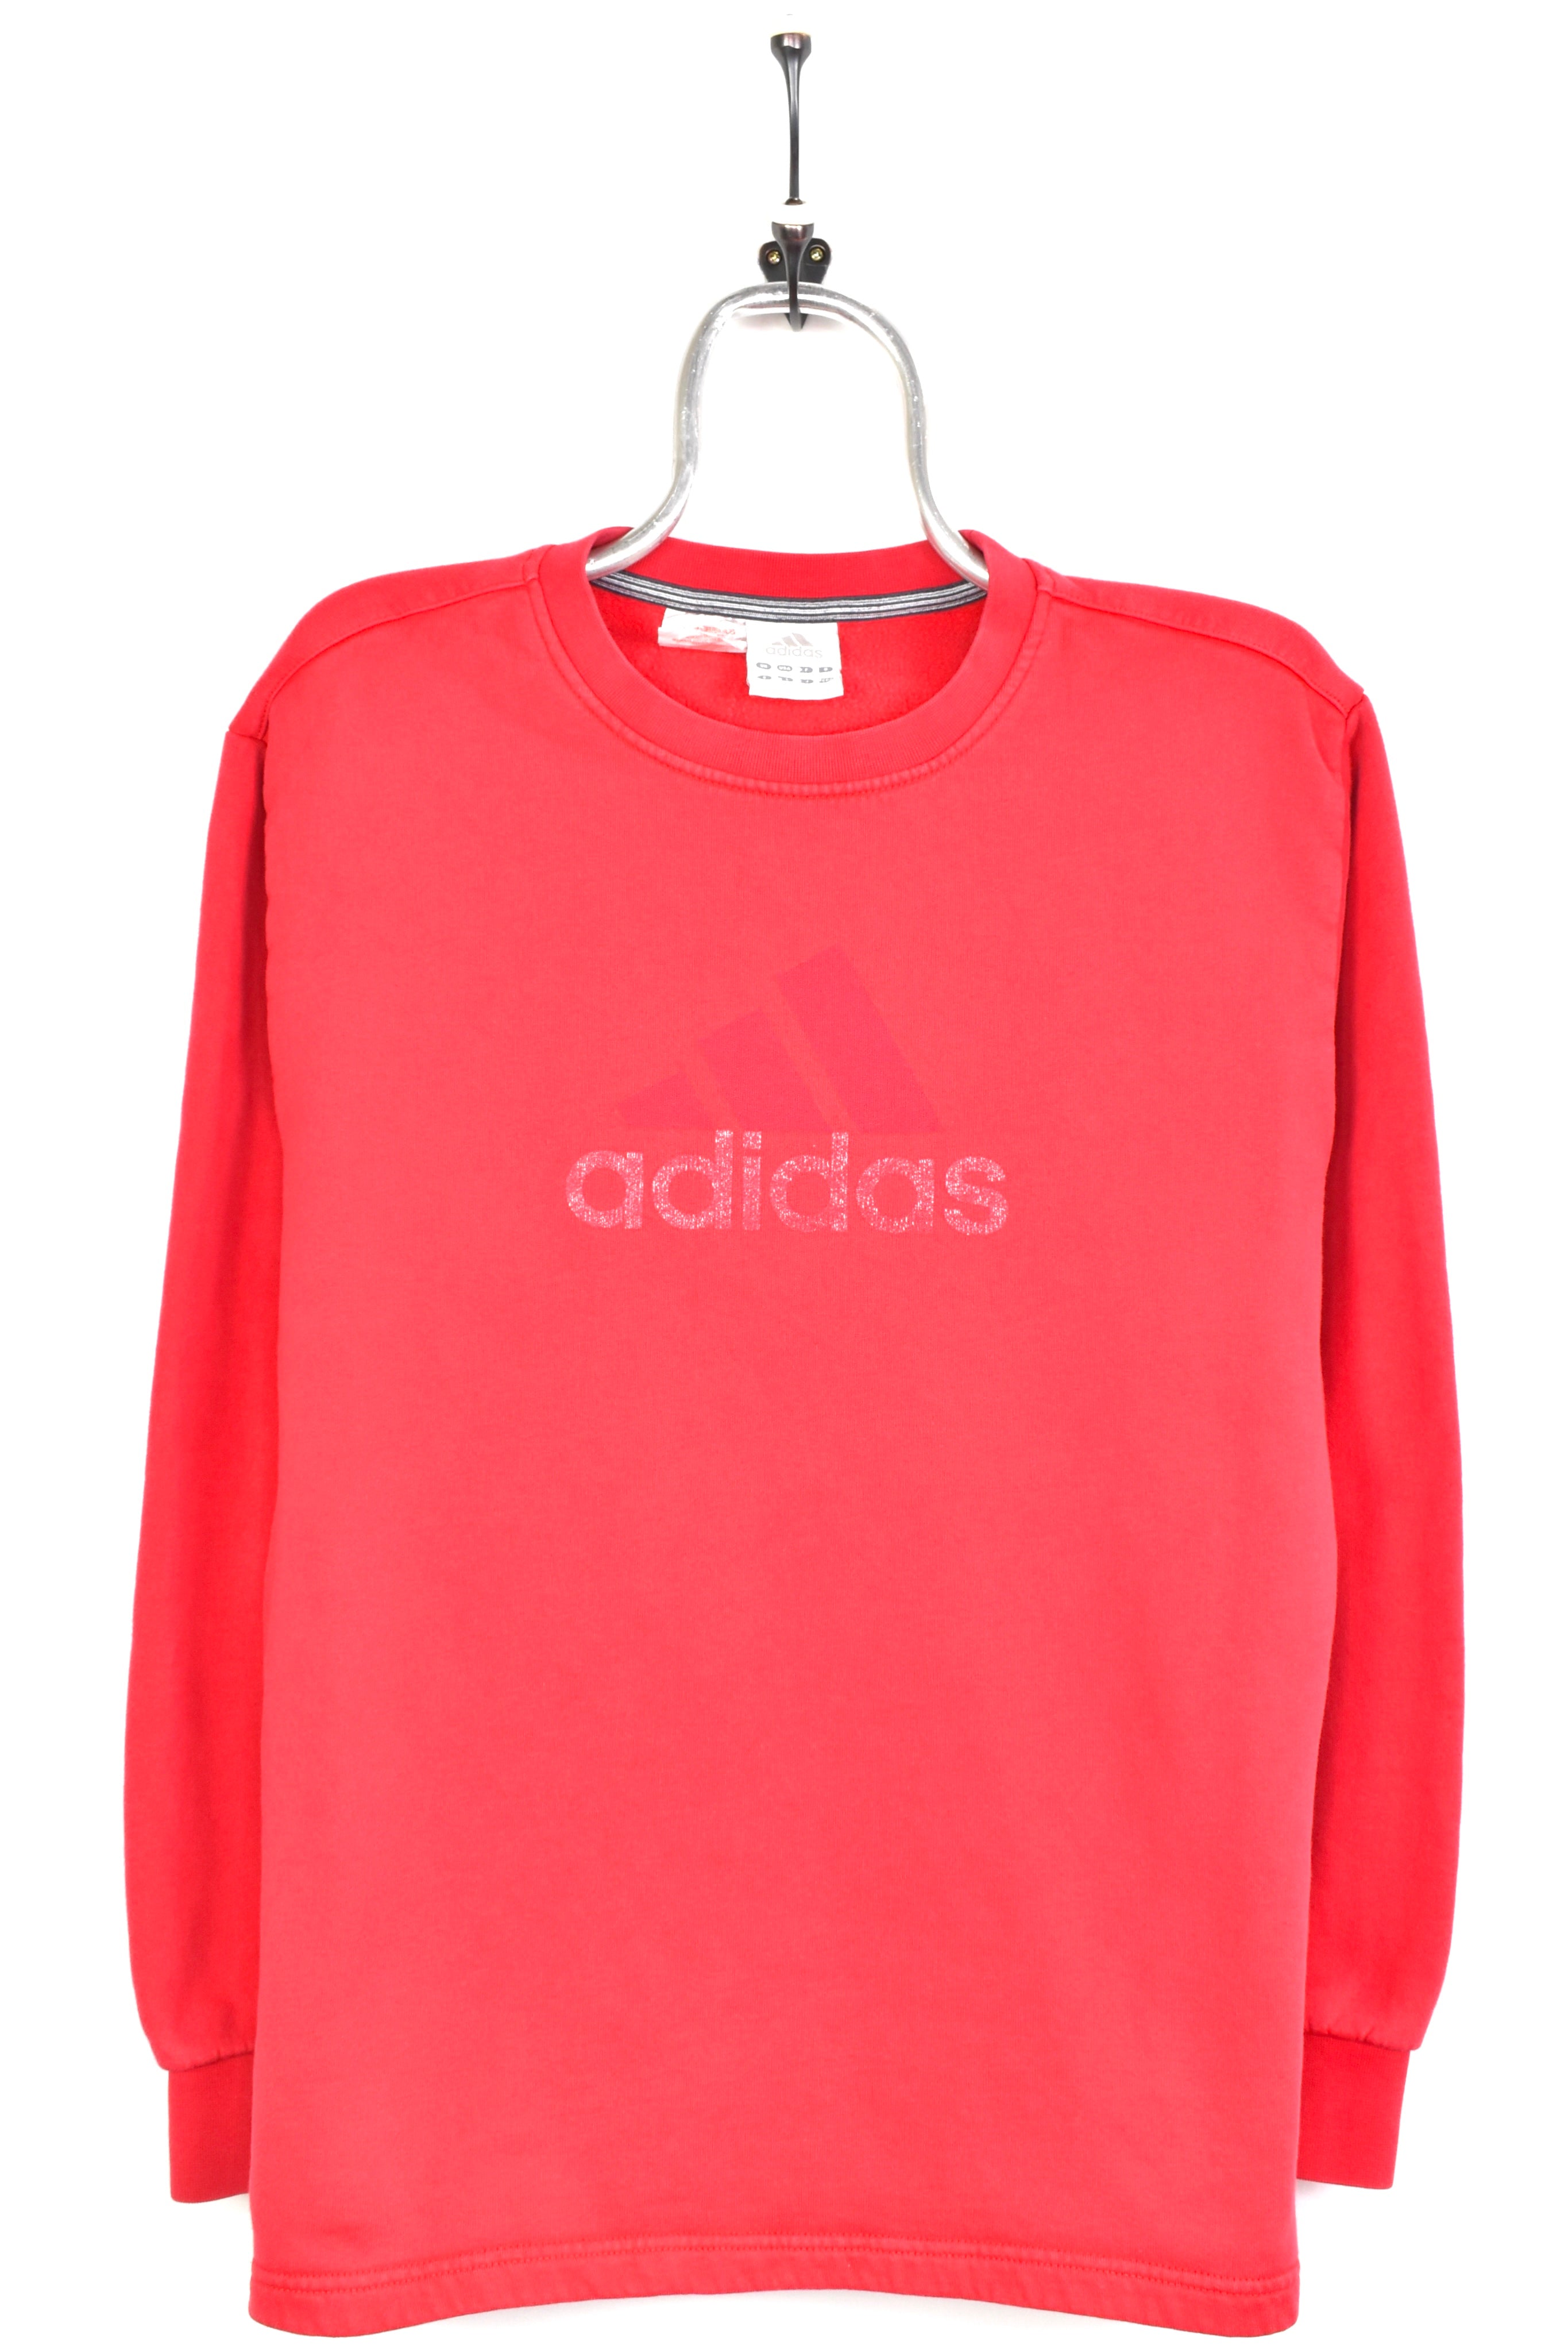 Vintage Adidas red sweatshirt | Large ADIDAS